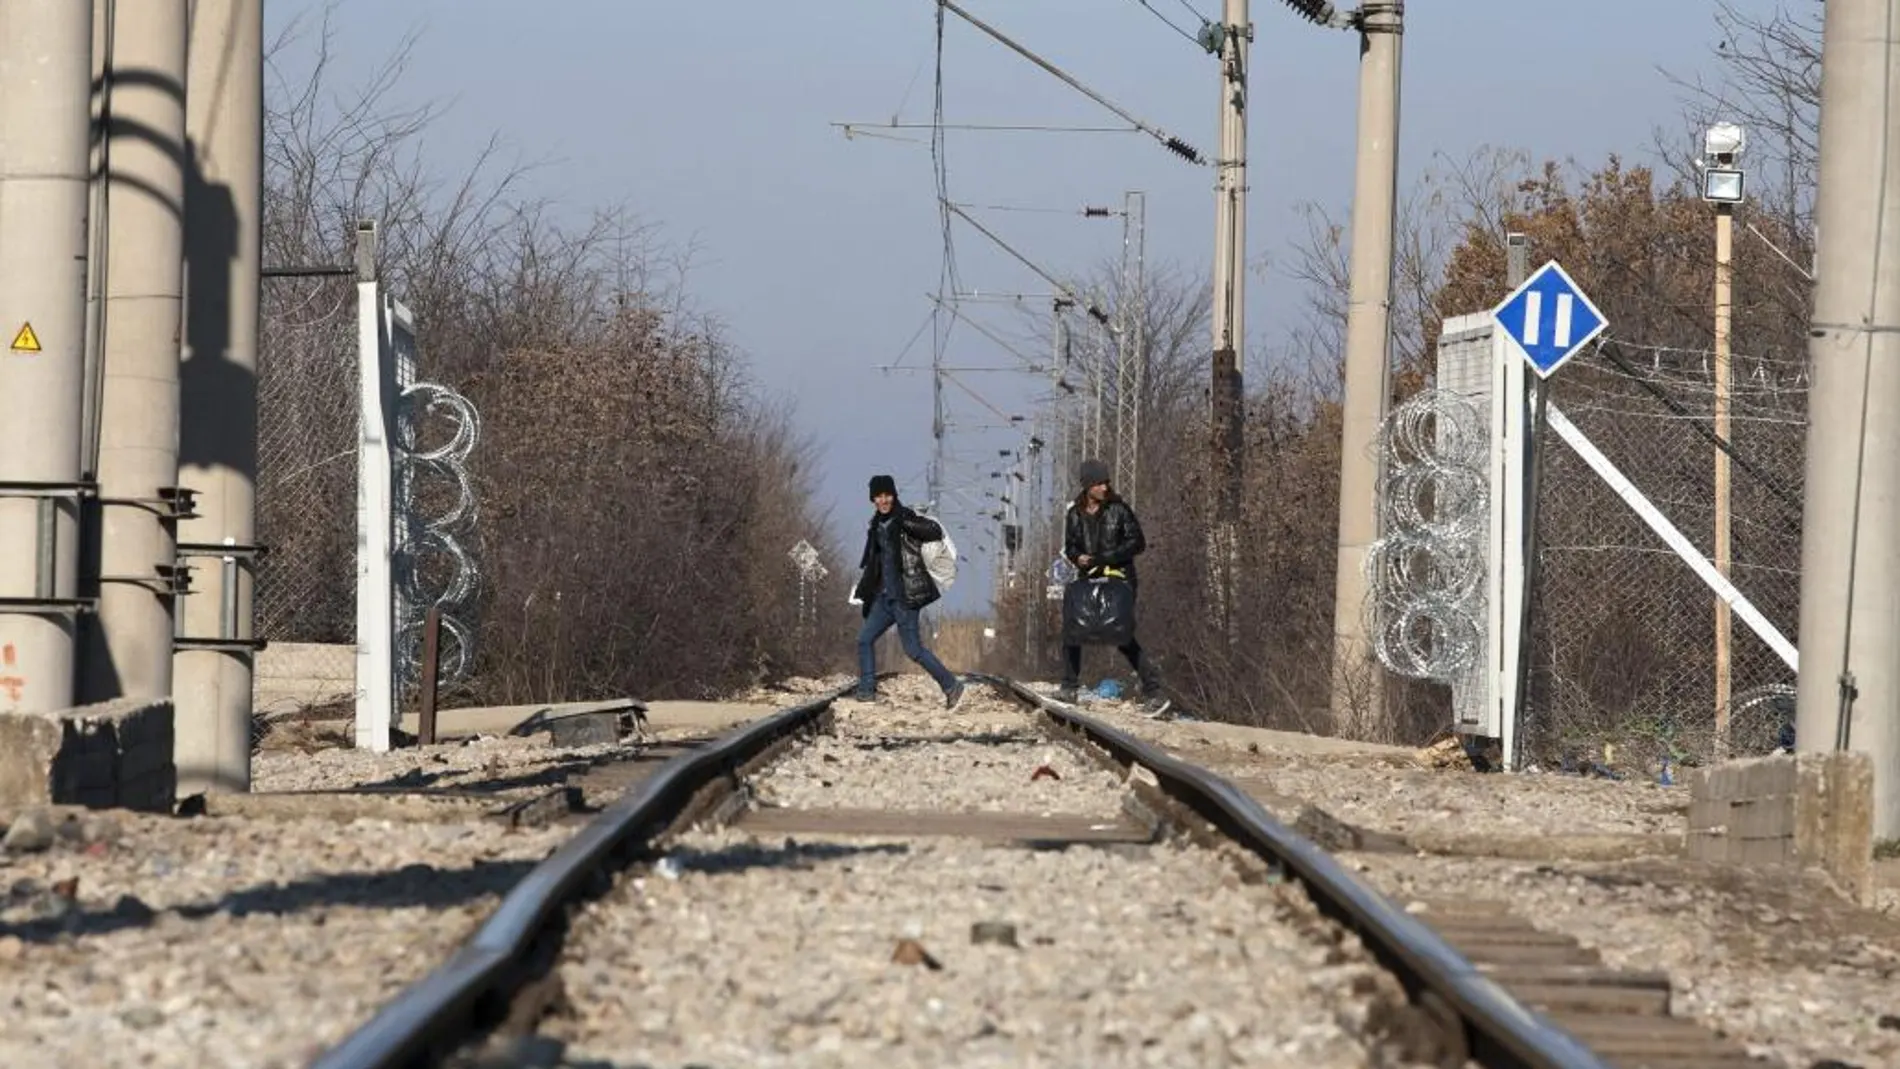 Dos refugiados cruzan las vías de un tren en la localidad de Idomeni, Grecia el 21 de enero de 2016 desde donde partirán a Macedonia.